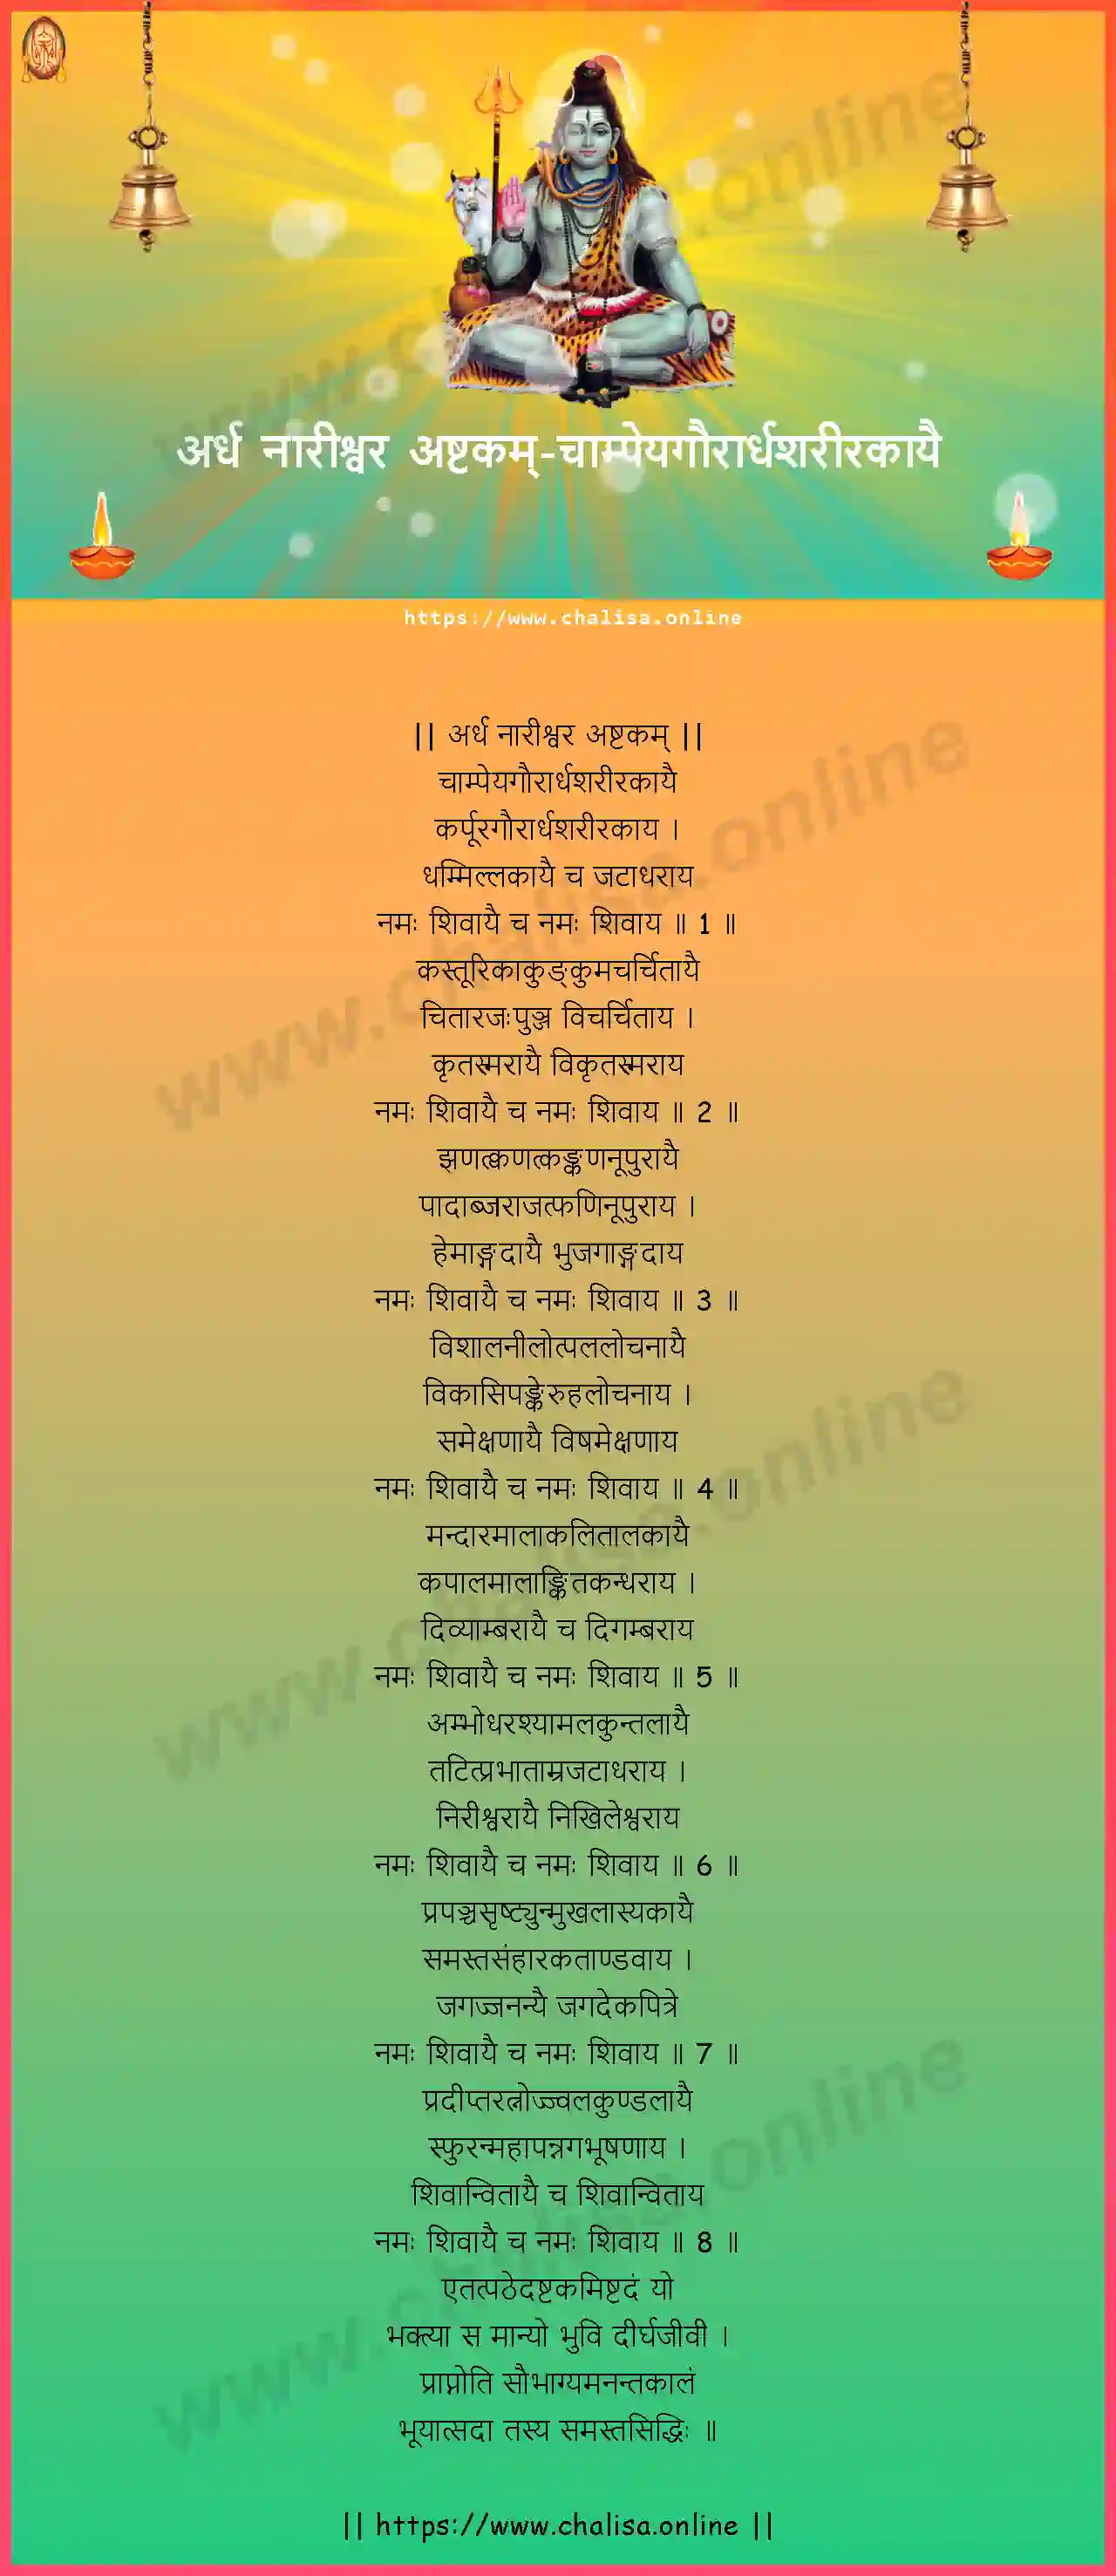 champeyagaurardhasarirakayai-ardha-naareeswara-ashtakam-sanskrit-sanskrit-lyrics-download